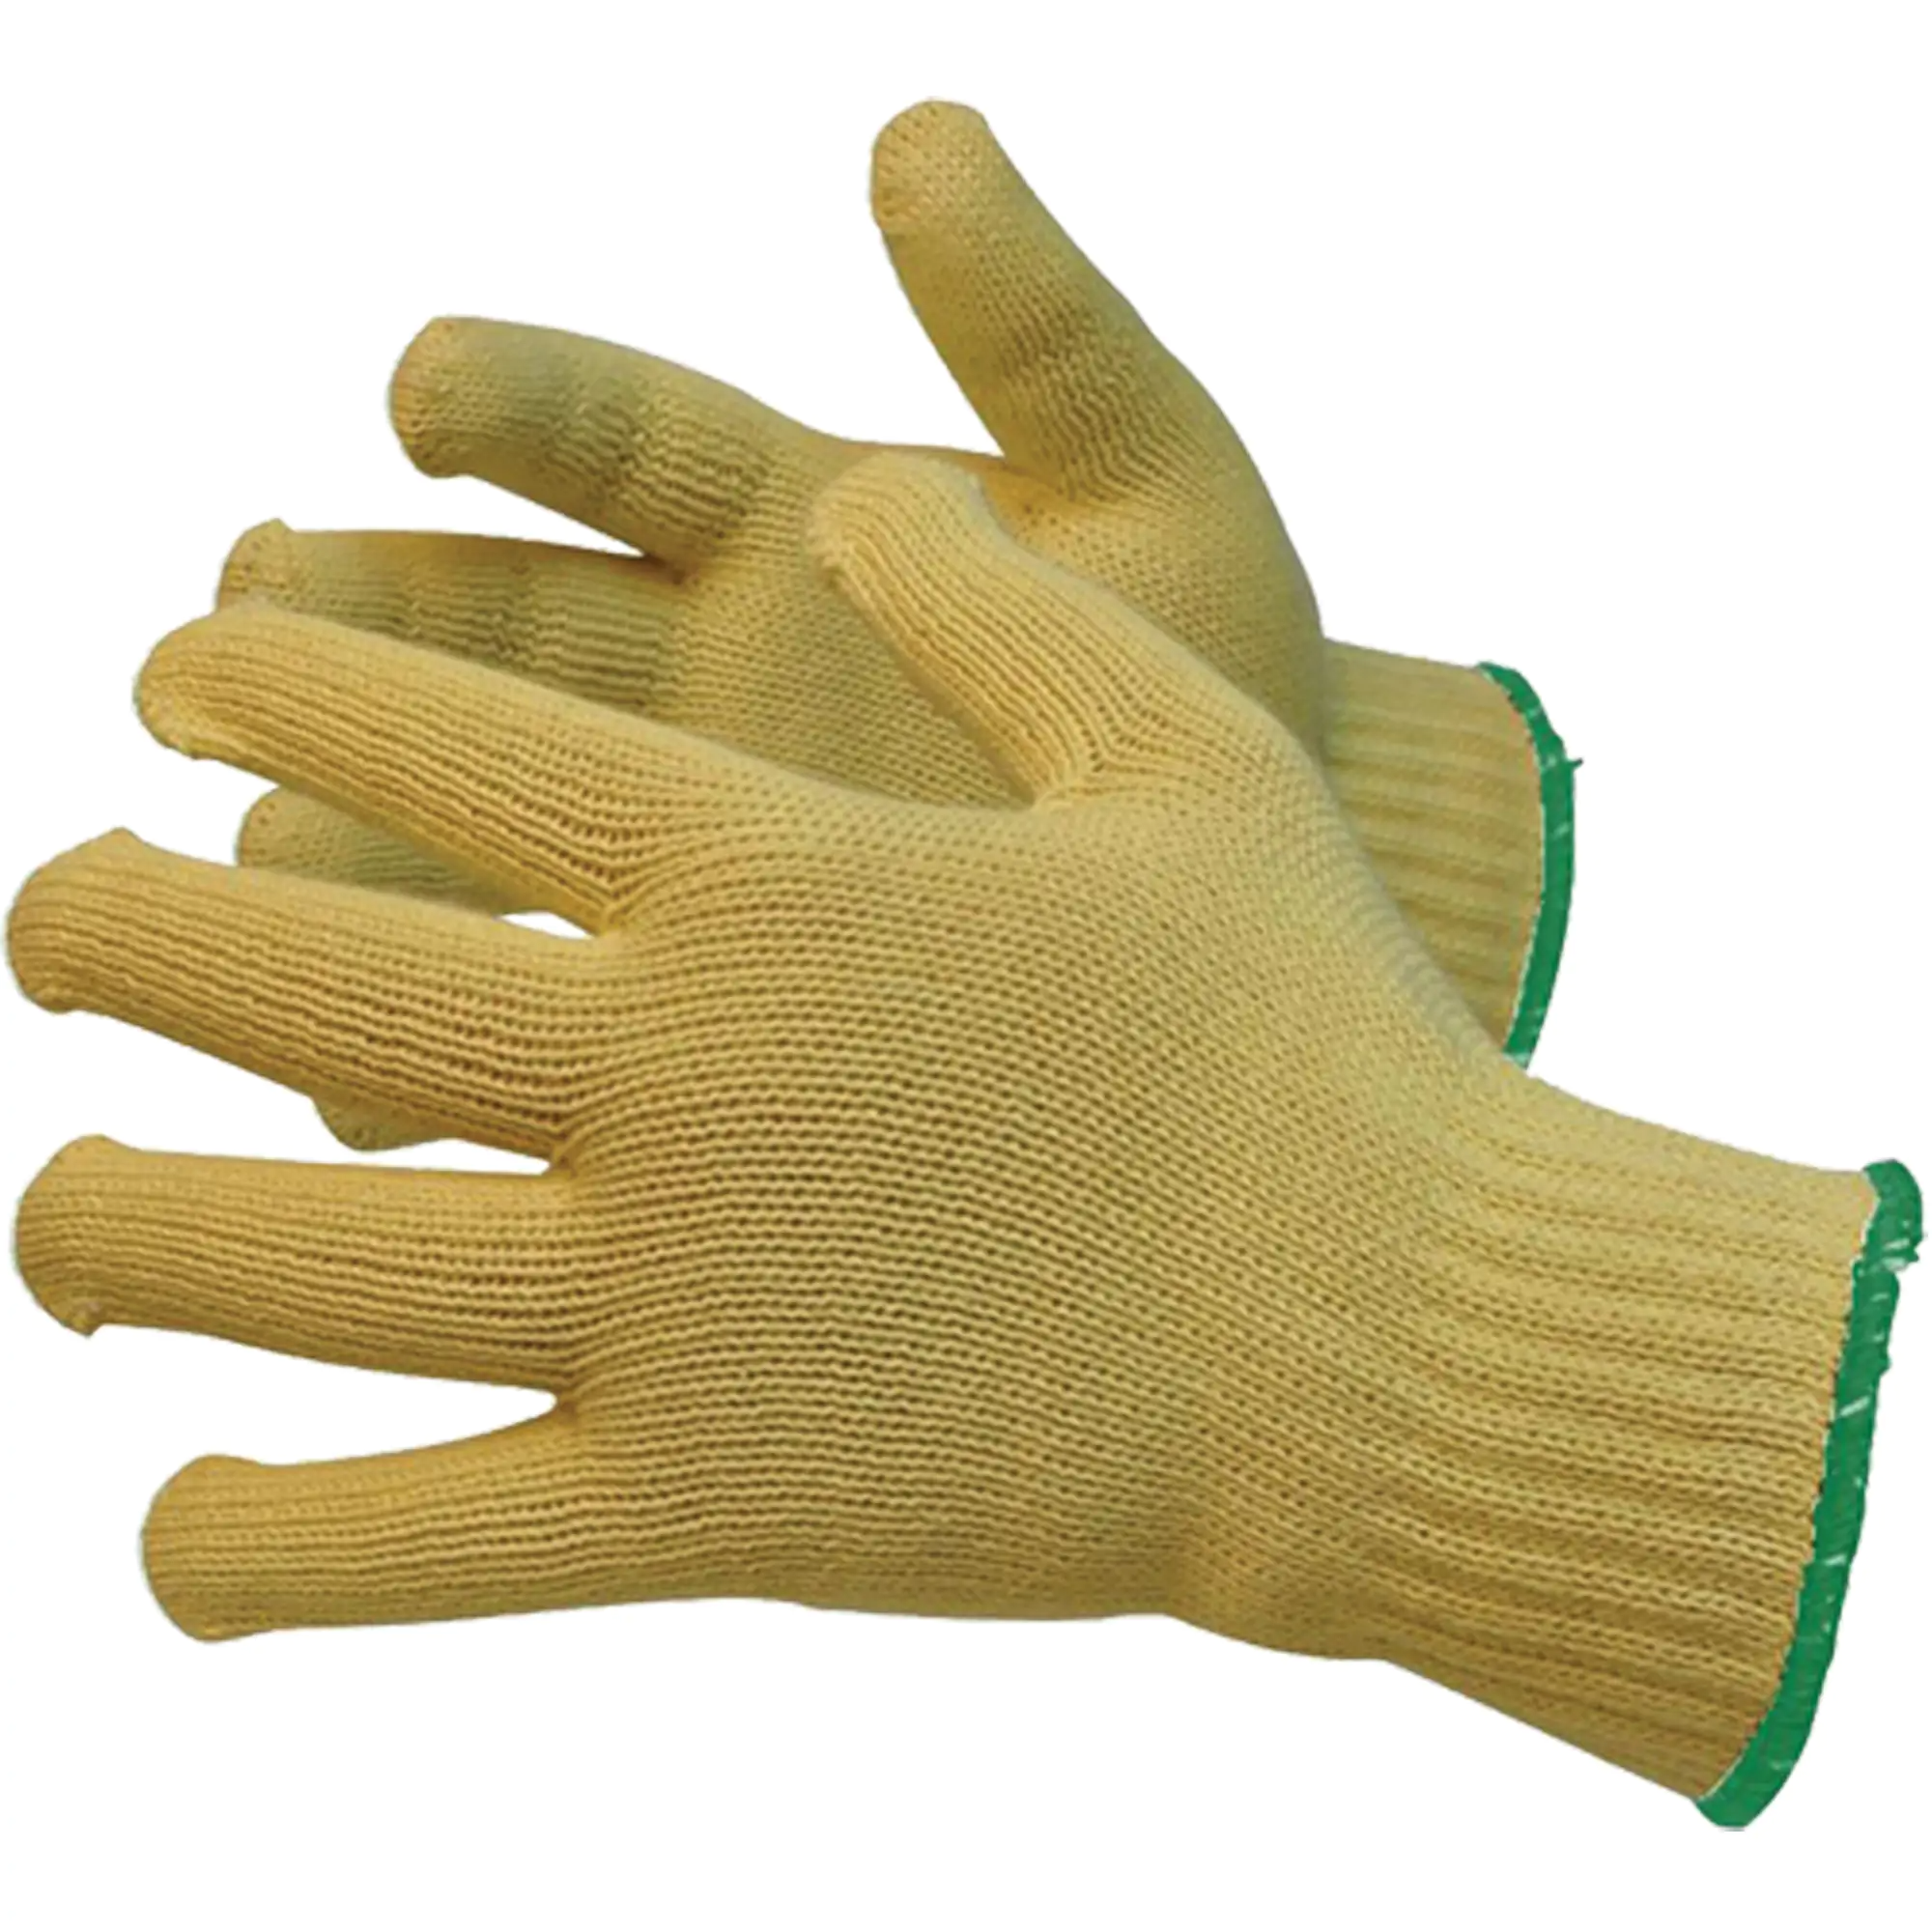 Knit Gloves, 7 Gauge, Kevlar® Shell, ANSI/ISEA 105 Level 2 - Large